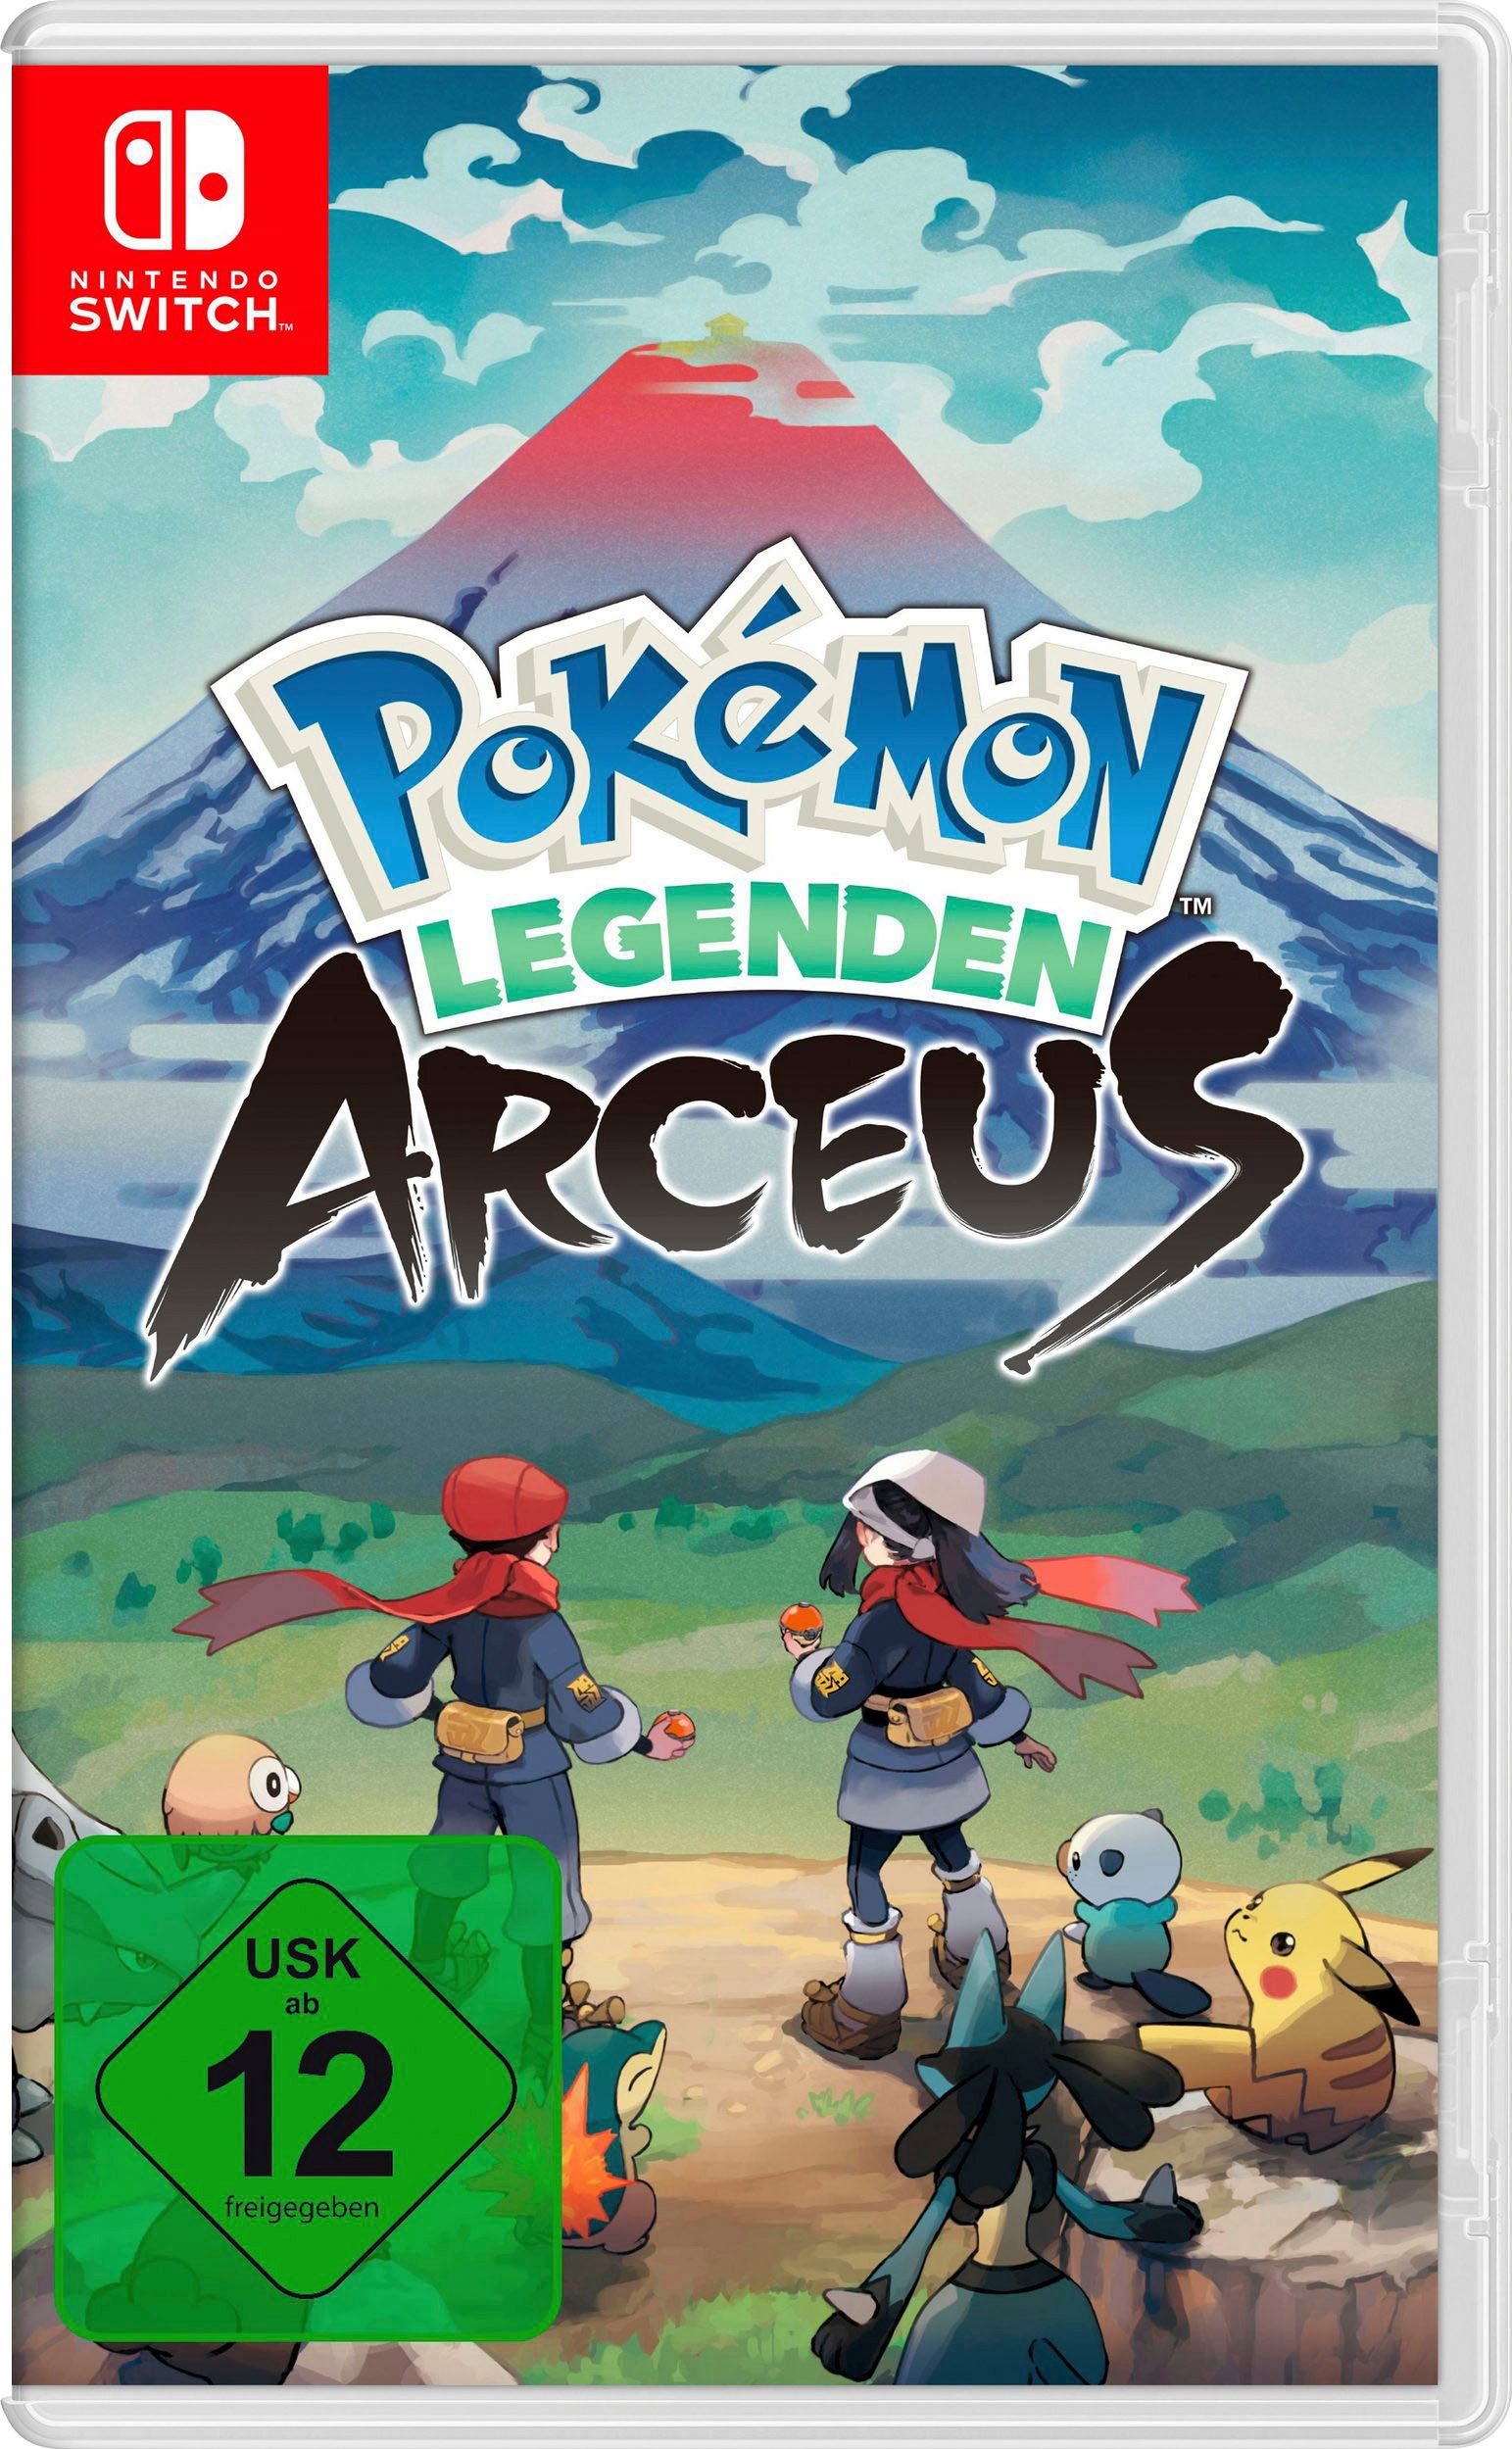 OLED-Modell, Nintendo inkl. Legenden Pokémon Switch, Arceus